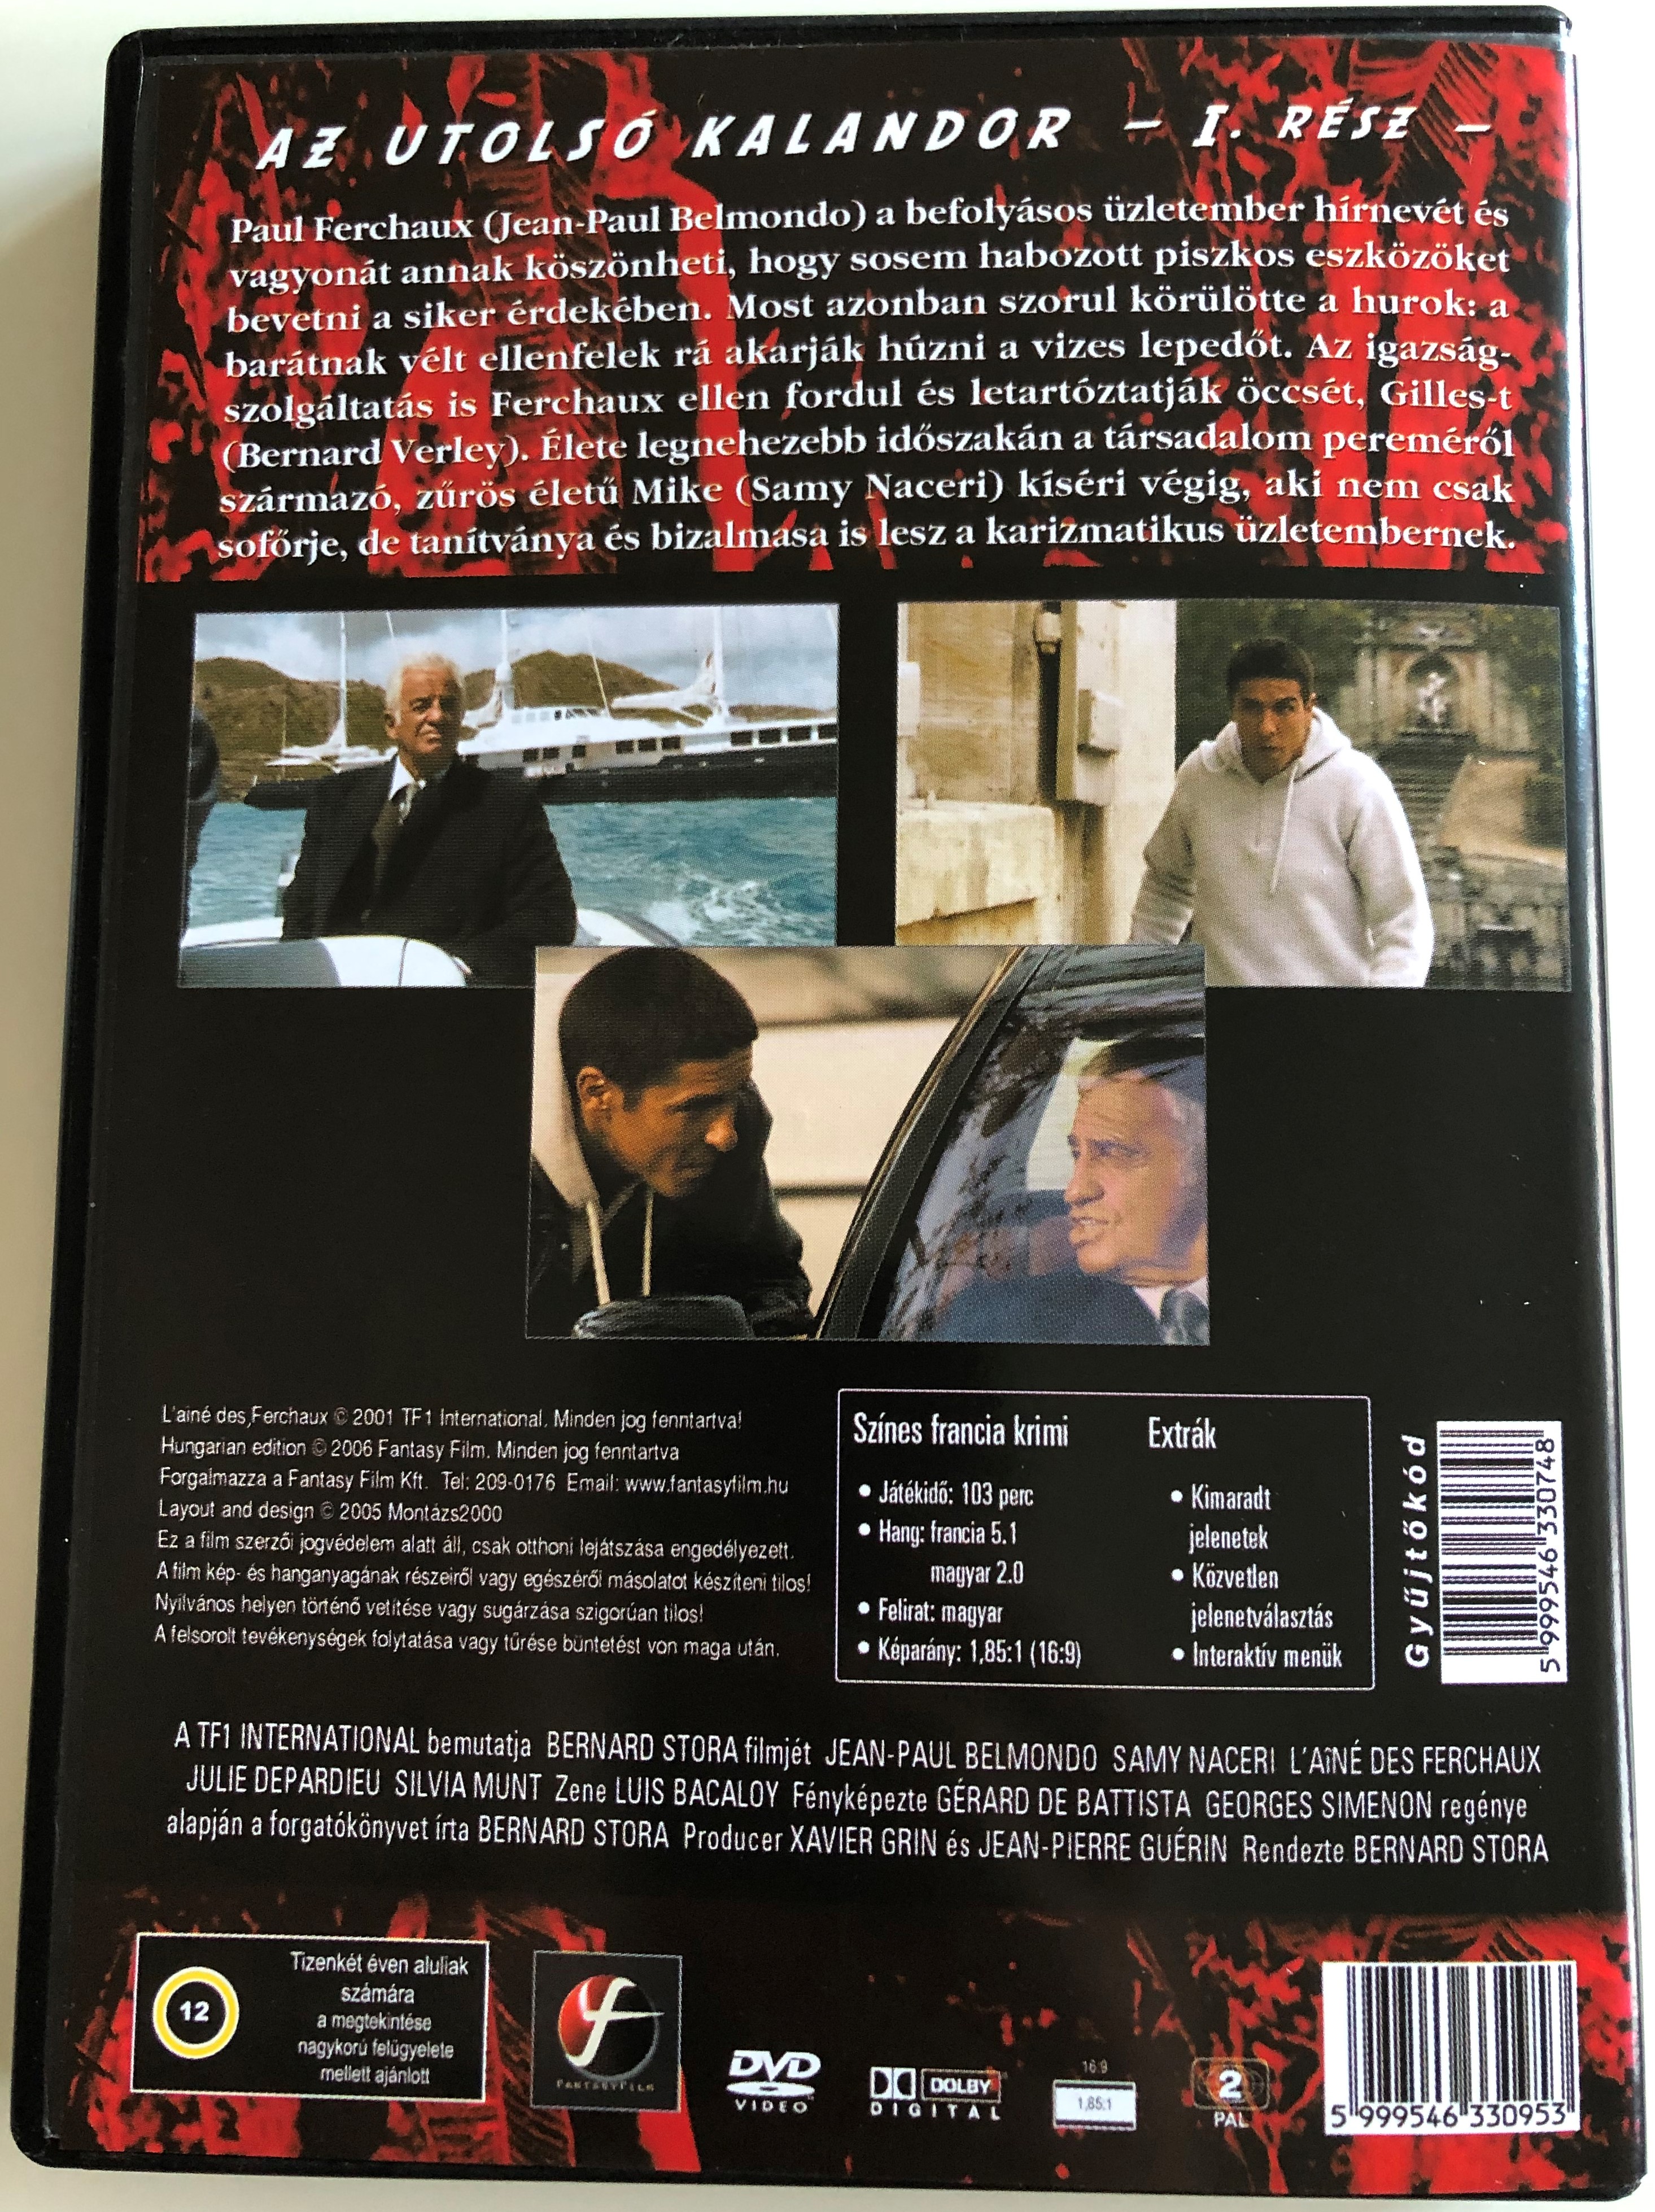 L'ainé des Ferchaux 2. DVD 2001 Az utolsó Kalandor I.rész 1.JPG